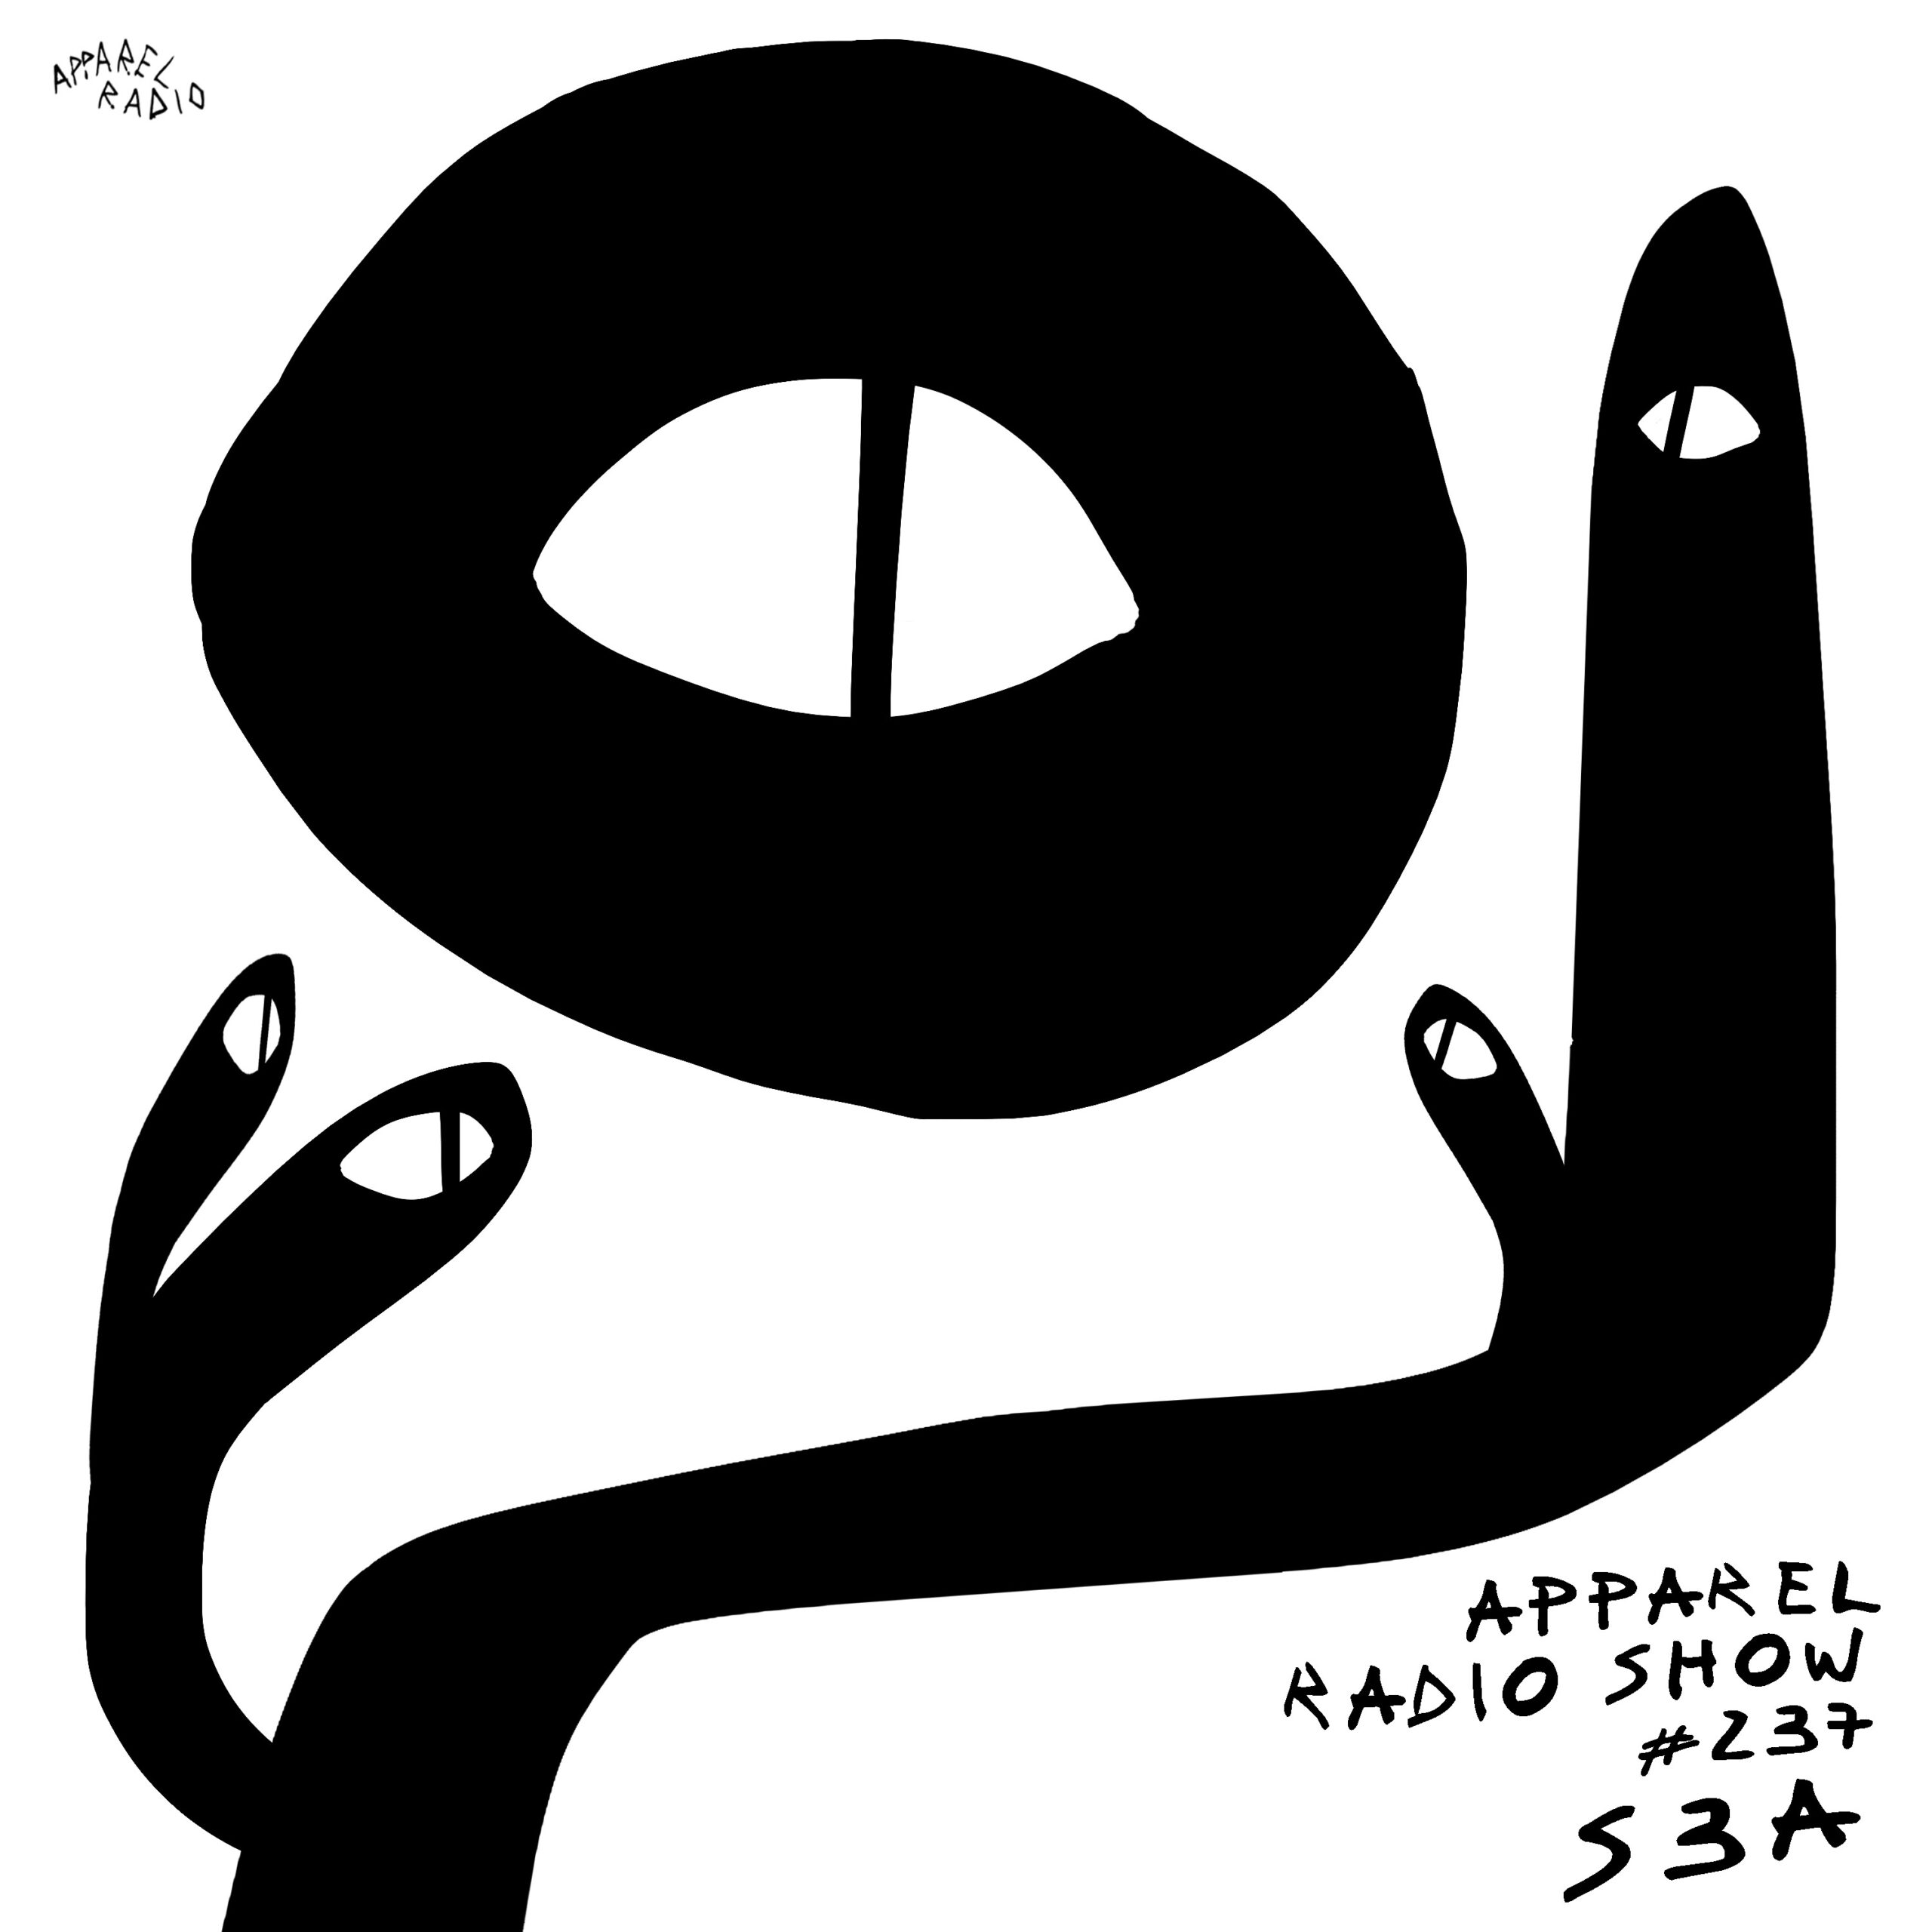 Apparel Radio Show #237: S3A